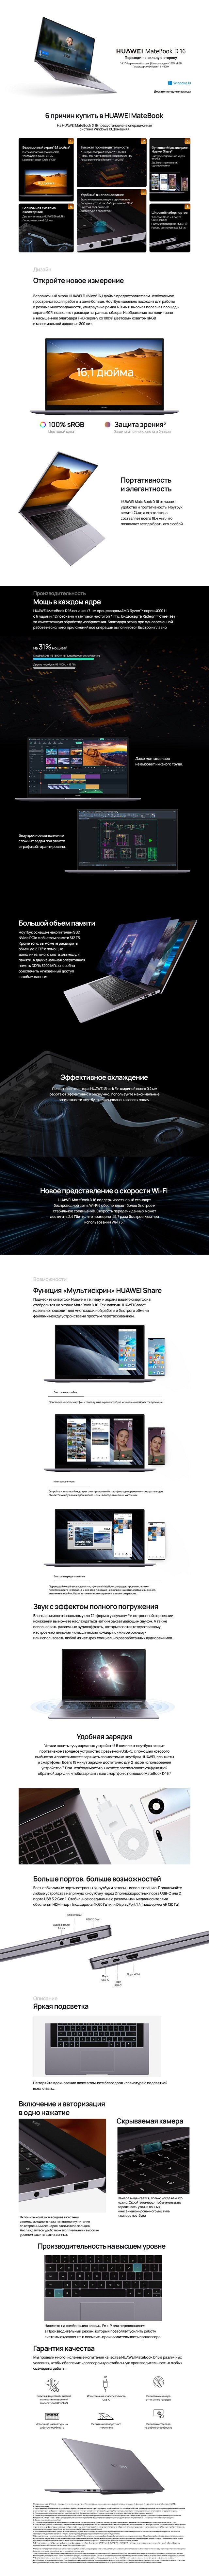 Купить Ноутбук Huawei Matebook 16